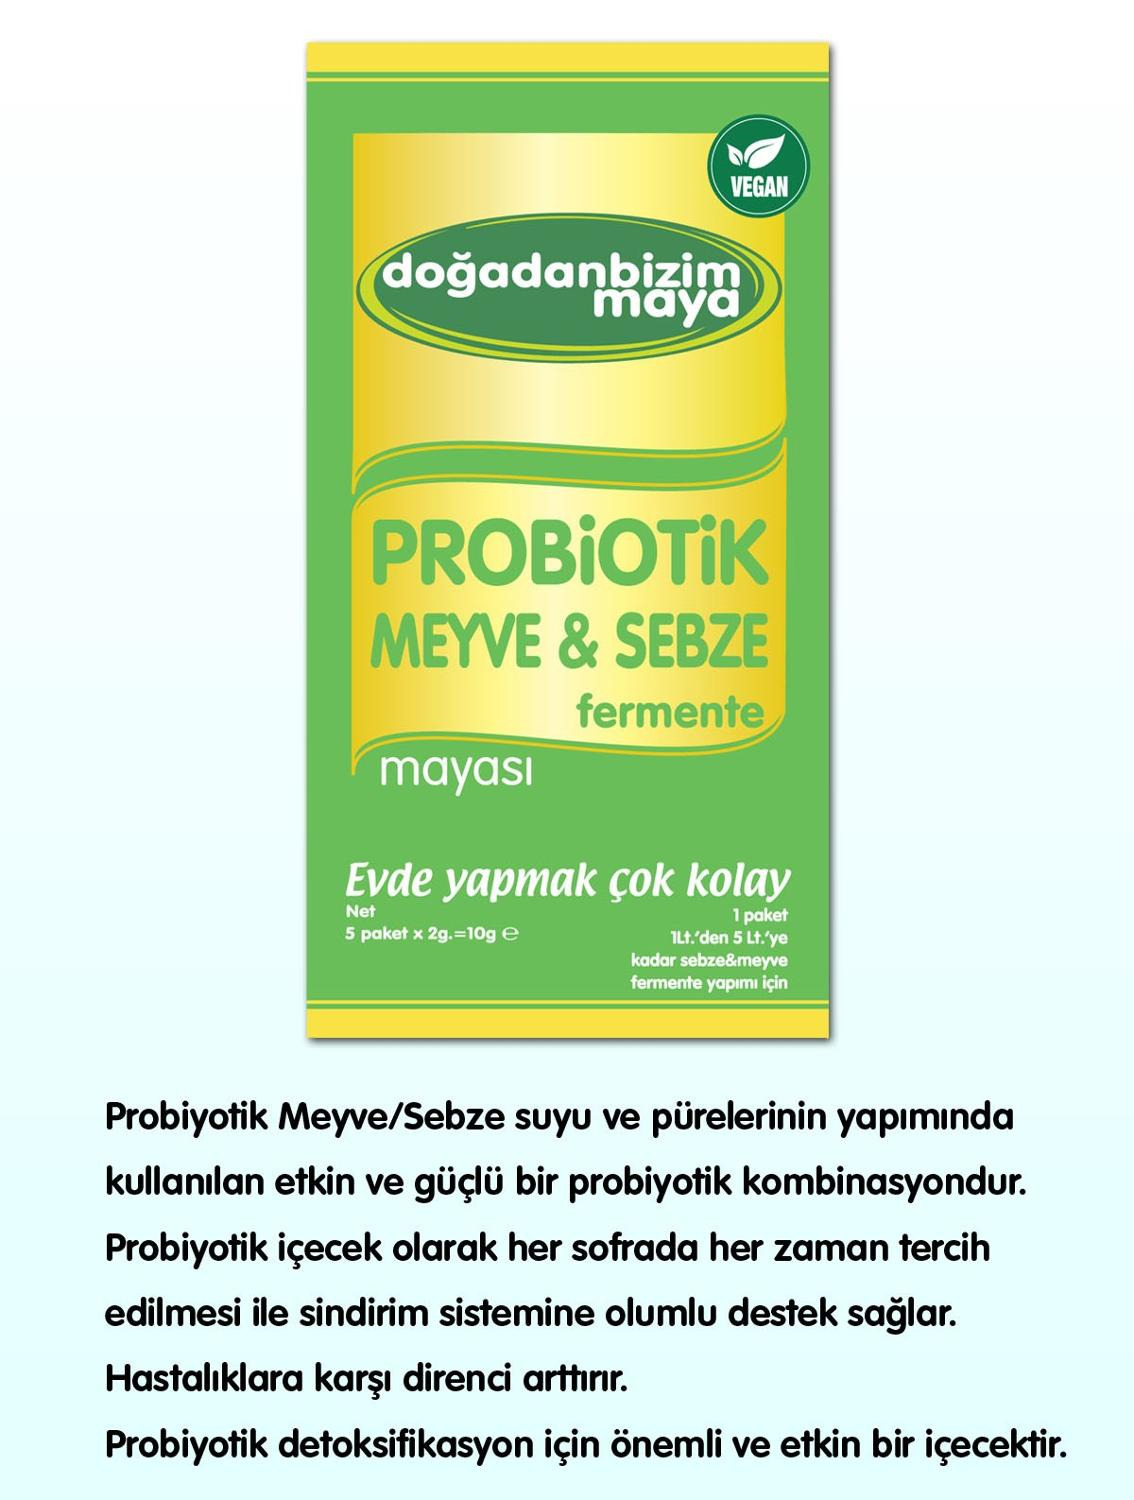 Probiotic Yogurt Yeast Healthy Production Yeast Easily Vinegar Yeast Maker Malt Drink Probiotic Vegetable Fruit Fermented Yeast